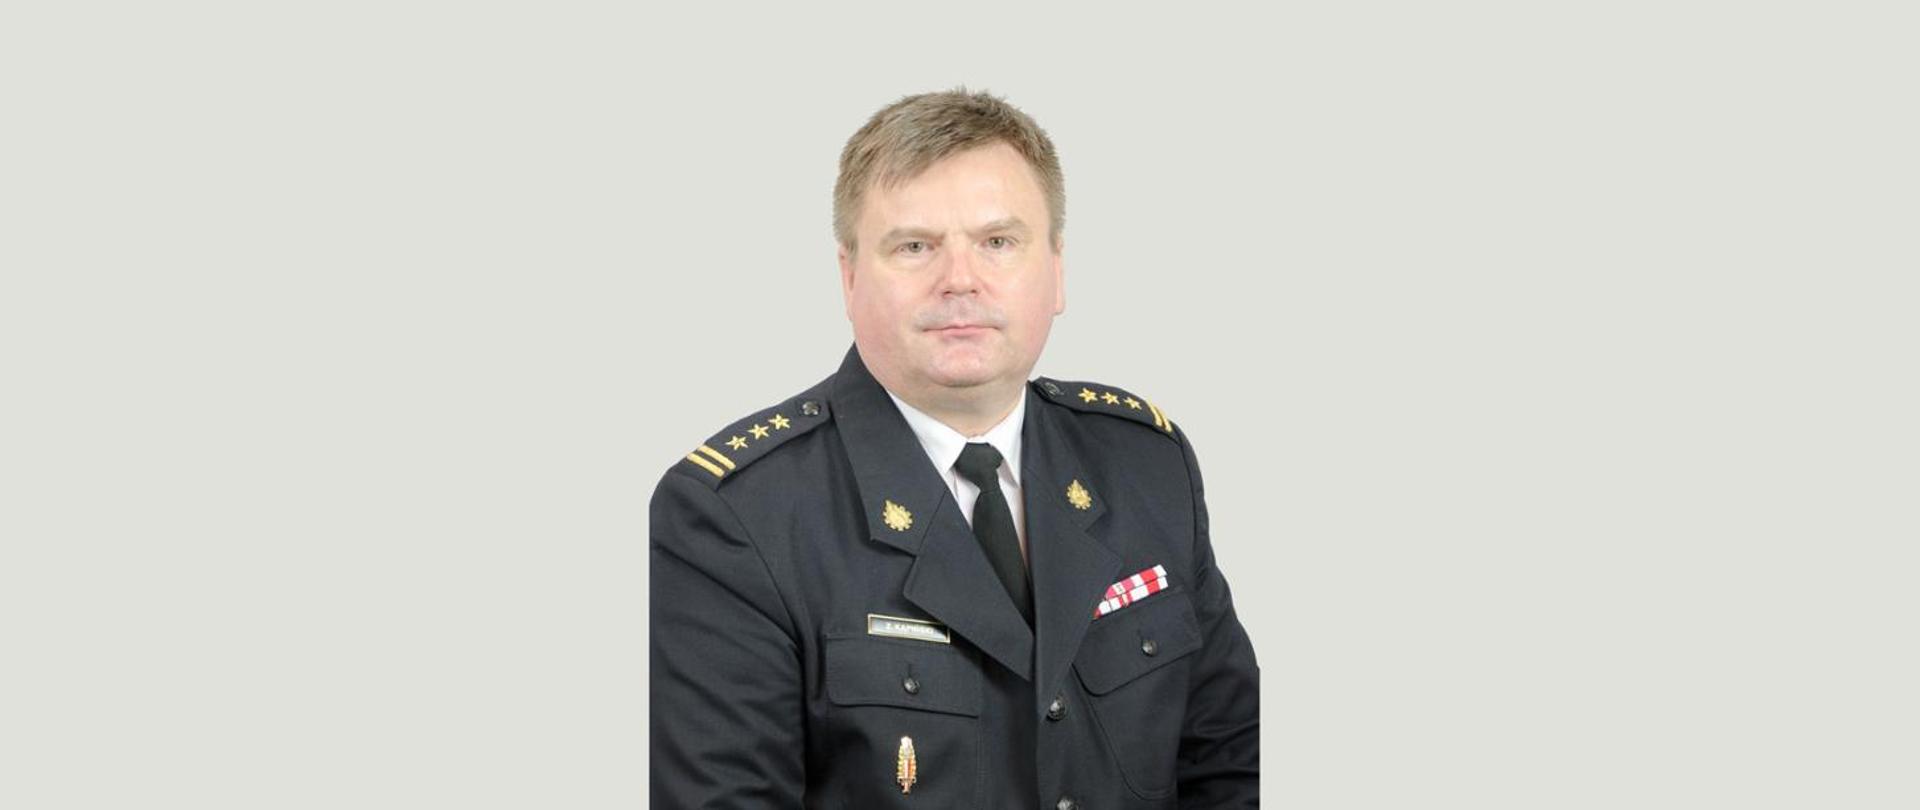 Komendant Powiatowy PSP st. bryg. mgr inż. Zbigniew Kąpiński w mundurze na szarym tle.
